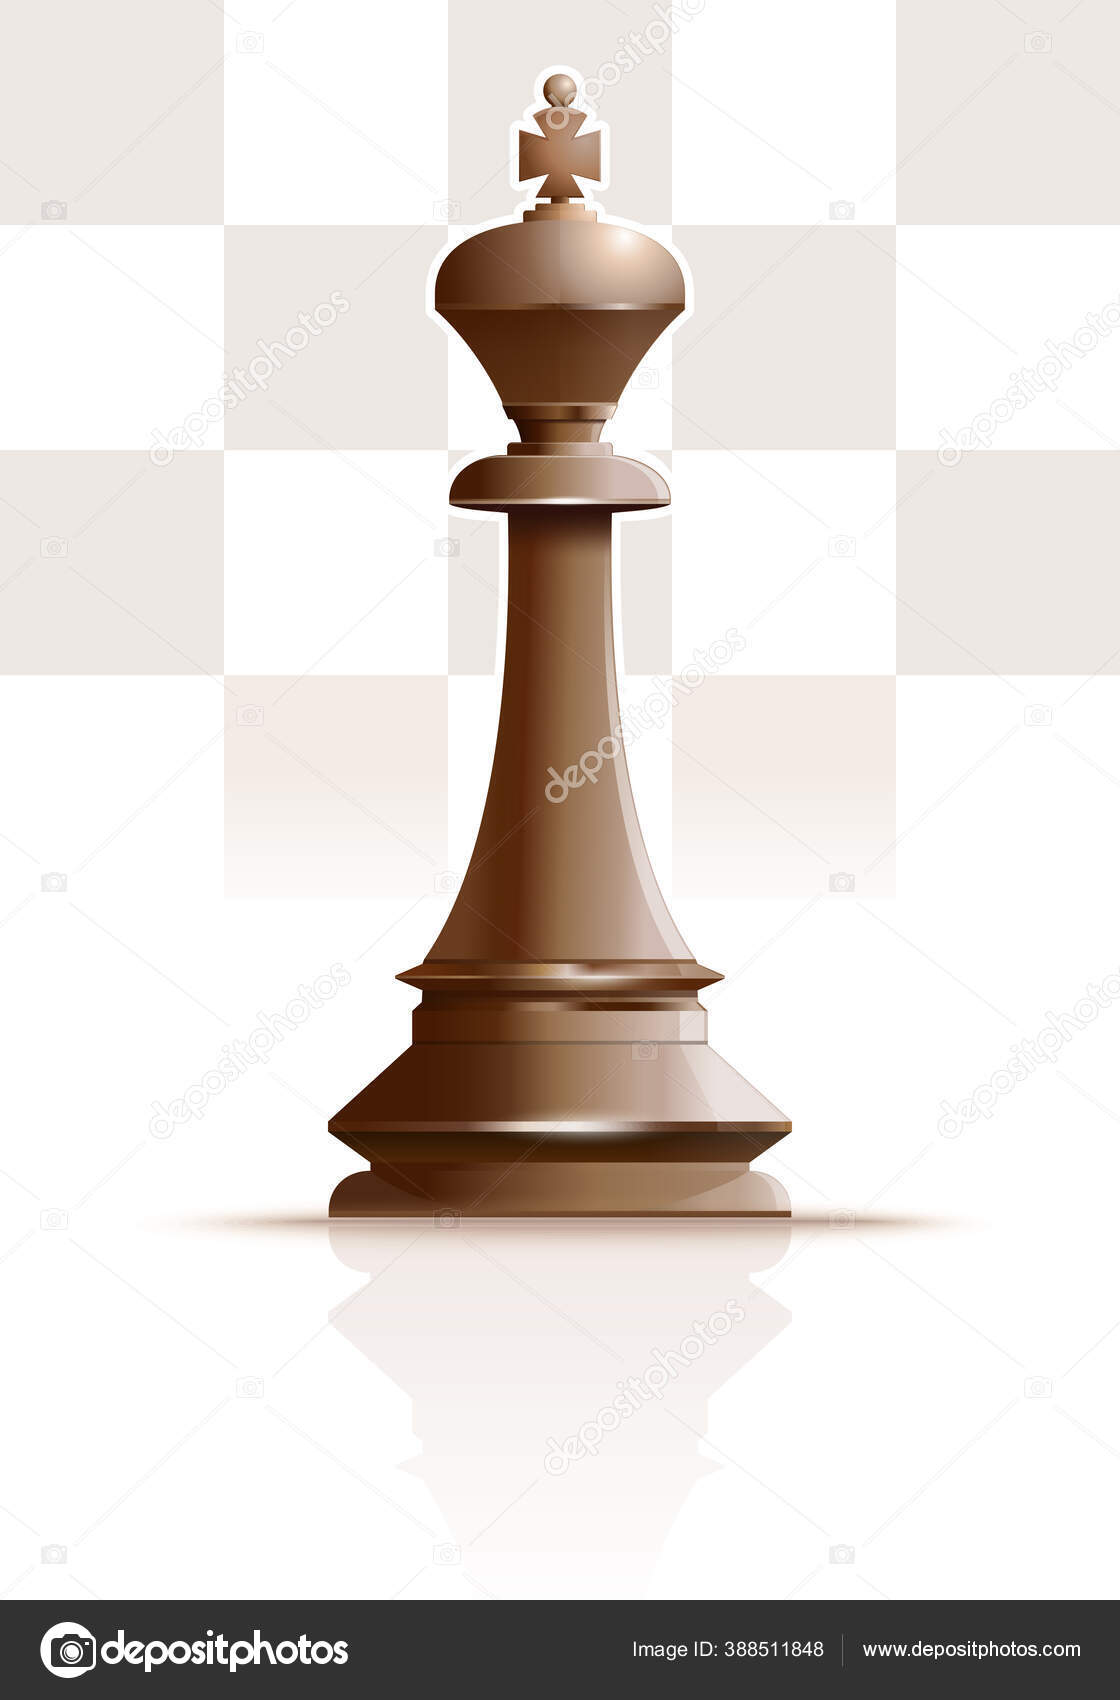 Tabuleiro de xadrez realista com conjunto de figuras em preto e branco 3d